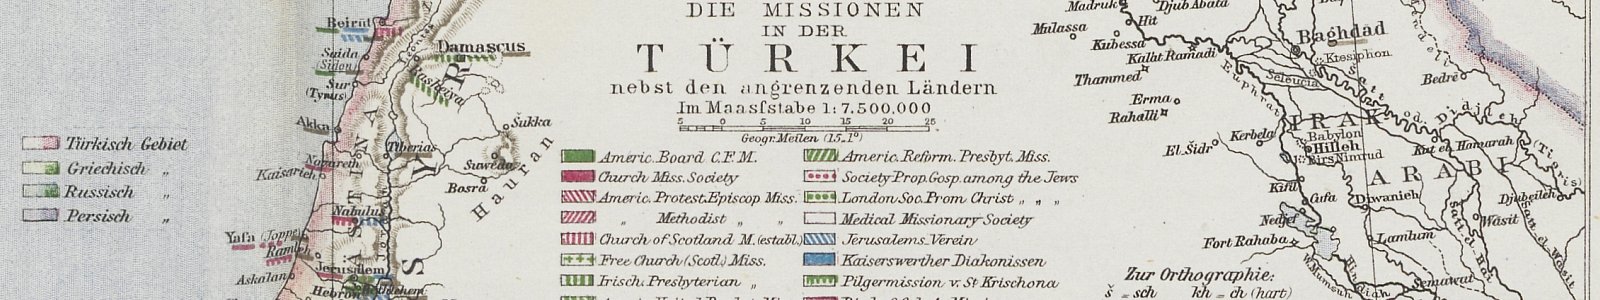 'Die Missionen in die Türkei'. In: 'Allgemeiner Missions-Atlas', (Perthes: Gotha 1867), door Reinhold Grundemann